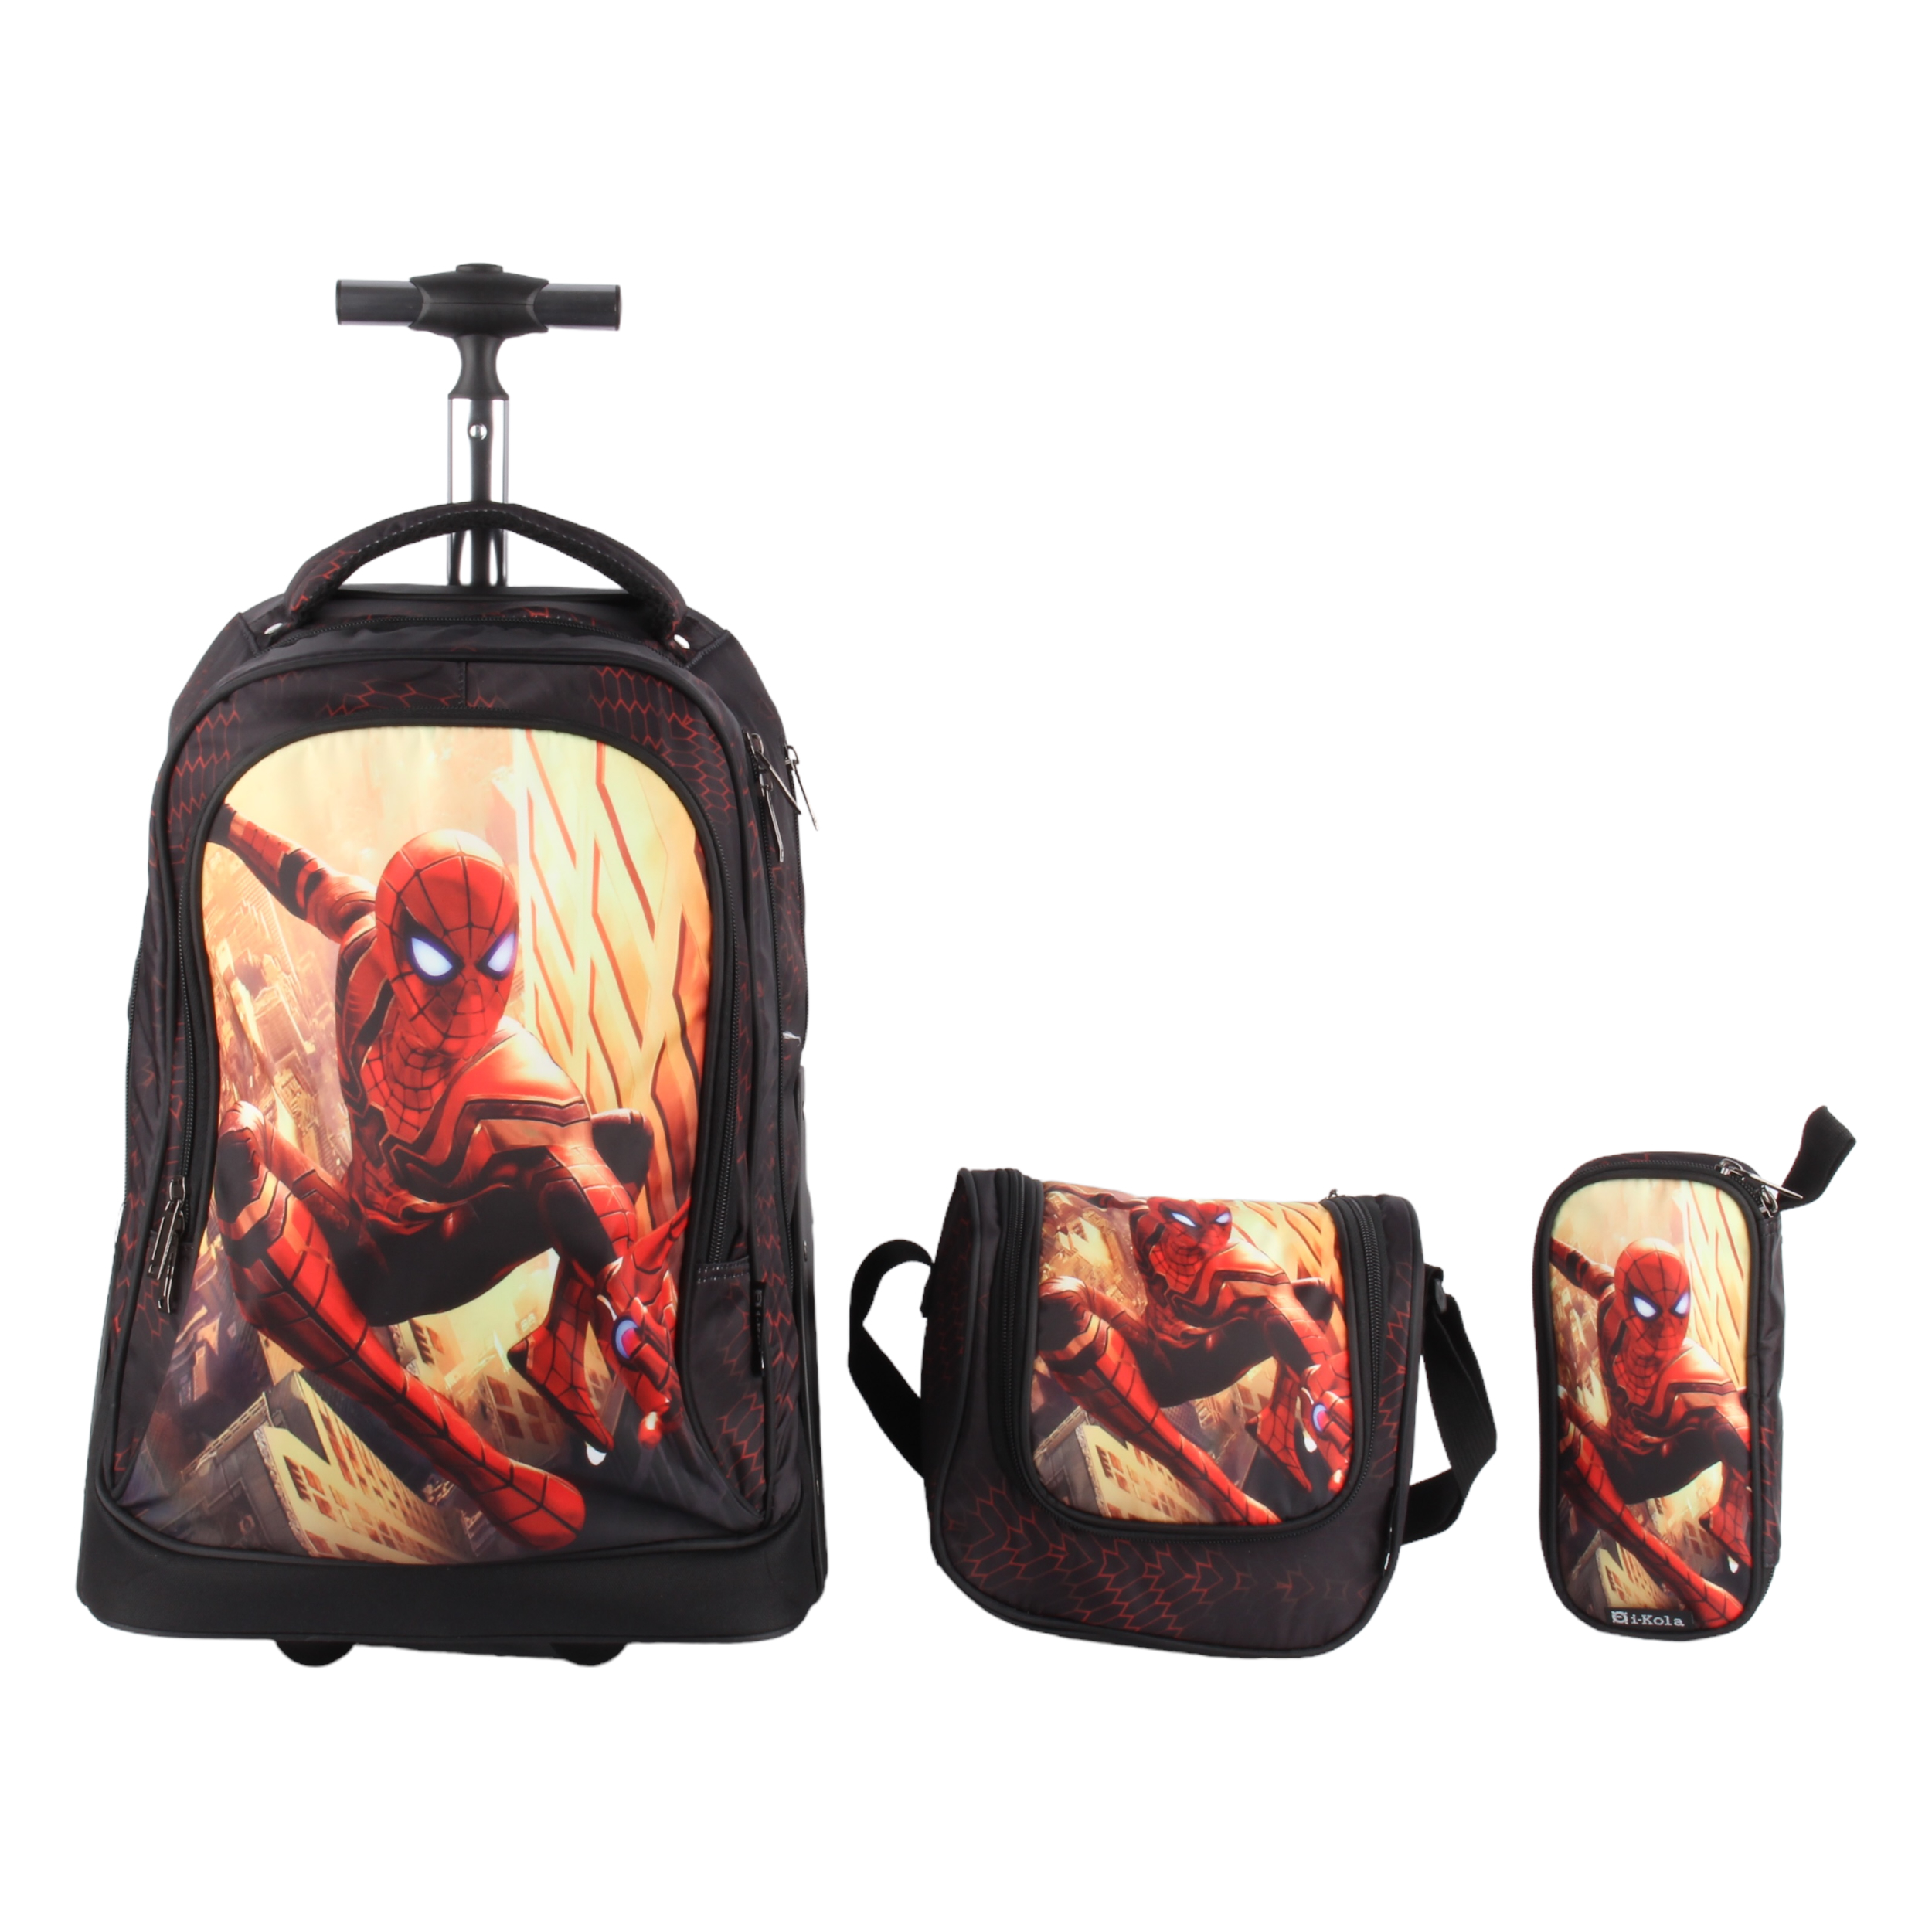 کوله پشتی چرخ دار مدل E620 طرح مرد عنکبوتی به همراه کیف غذا و جامدادی